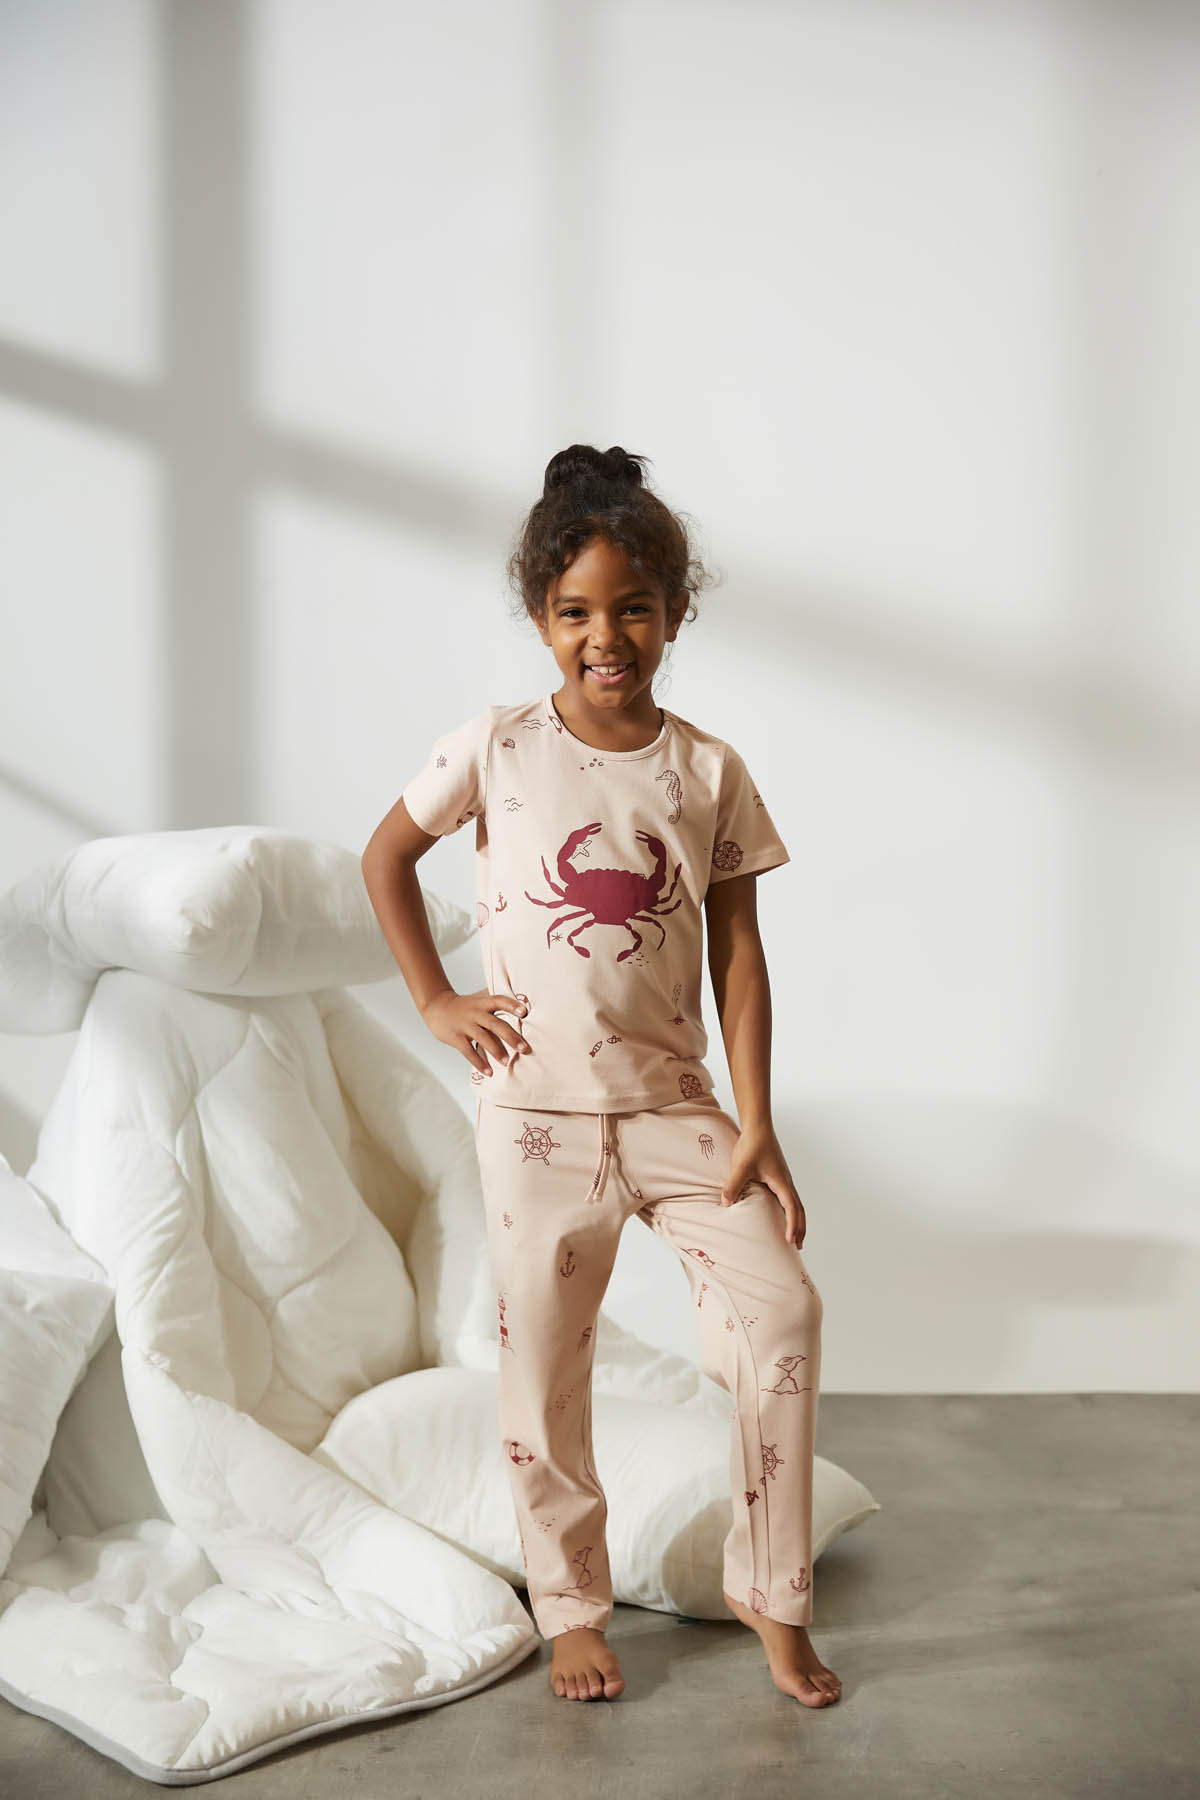 Kız Çocuk Deniz Desen Baskılı Midi Pijama Takımı